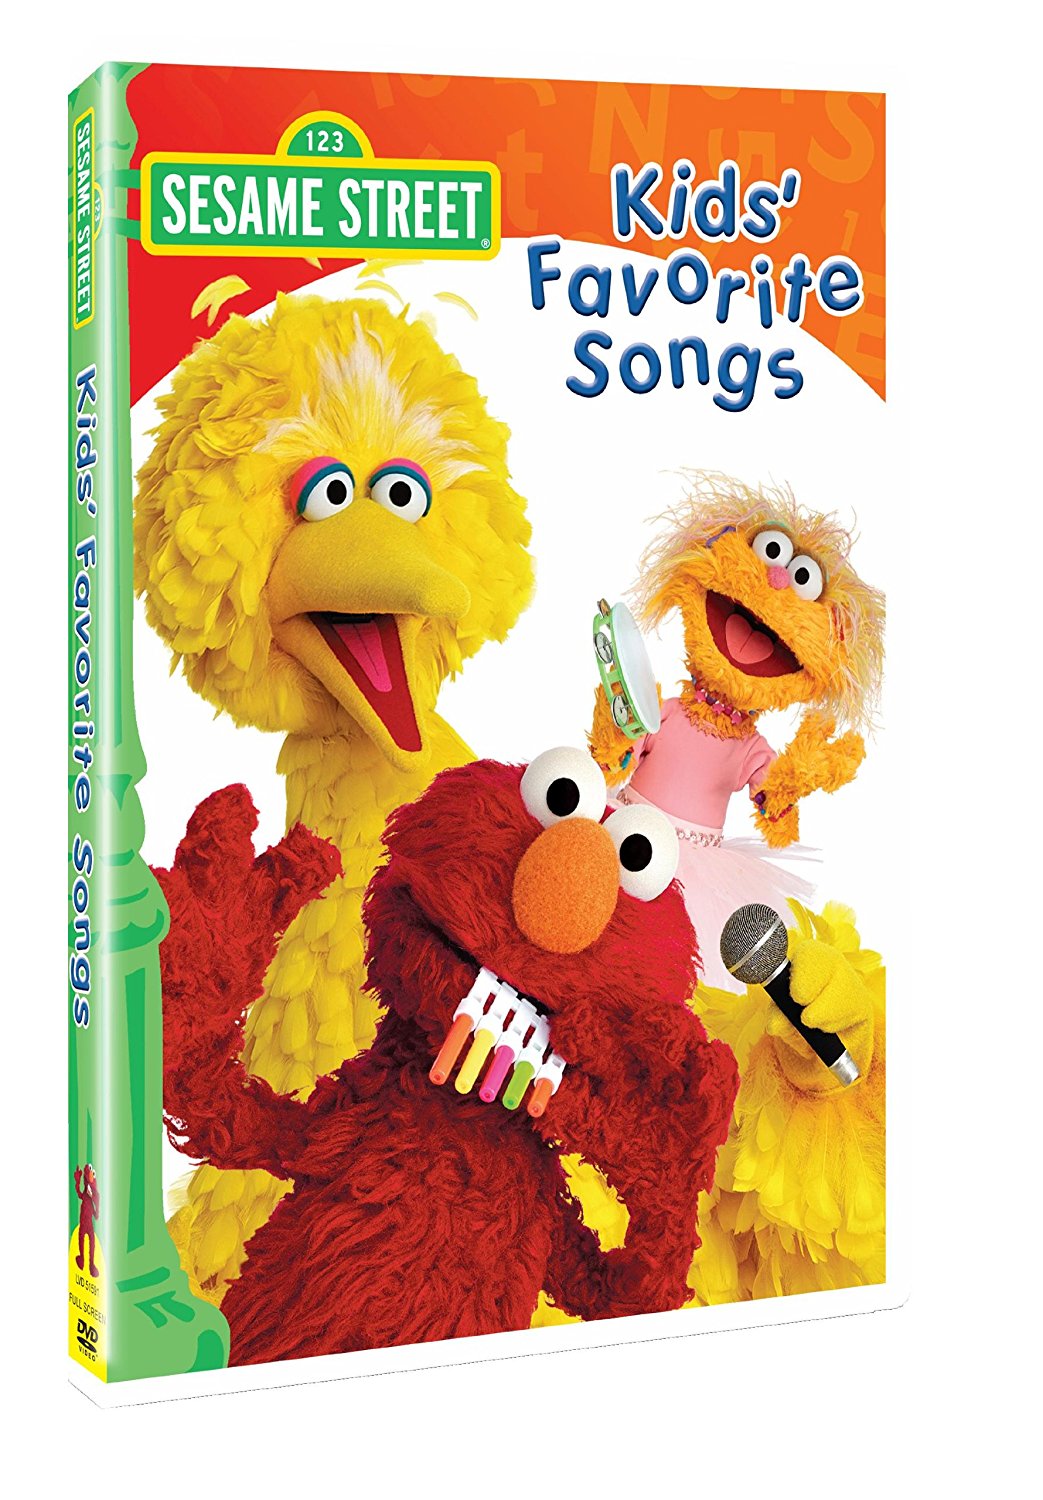 Sesame Street - Kids' Favorite Songs by Sesame Street